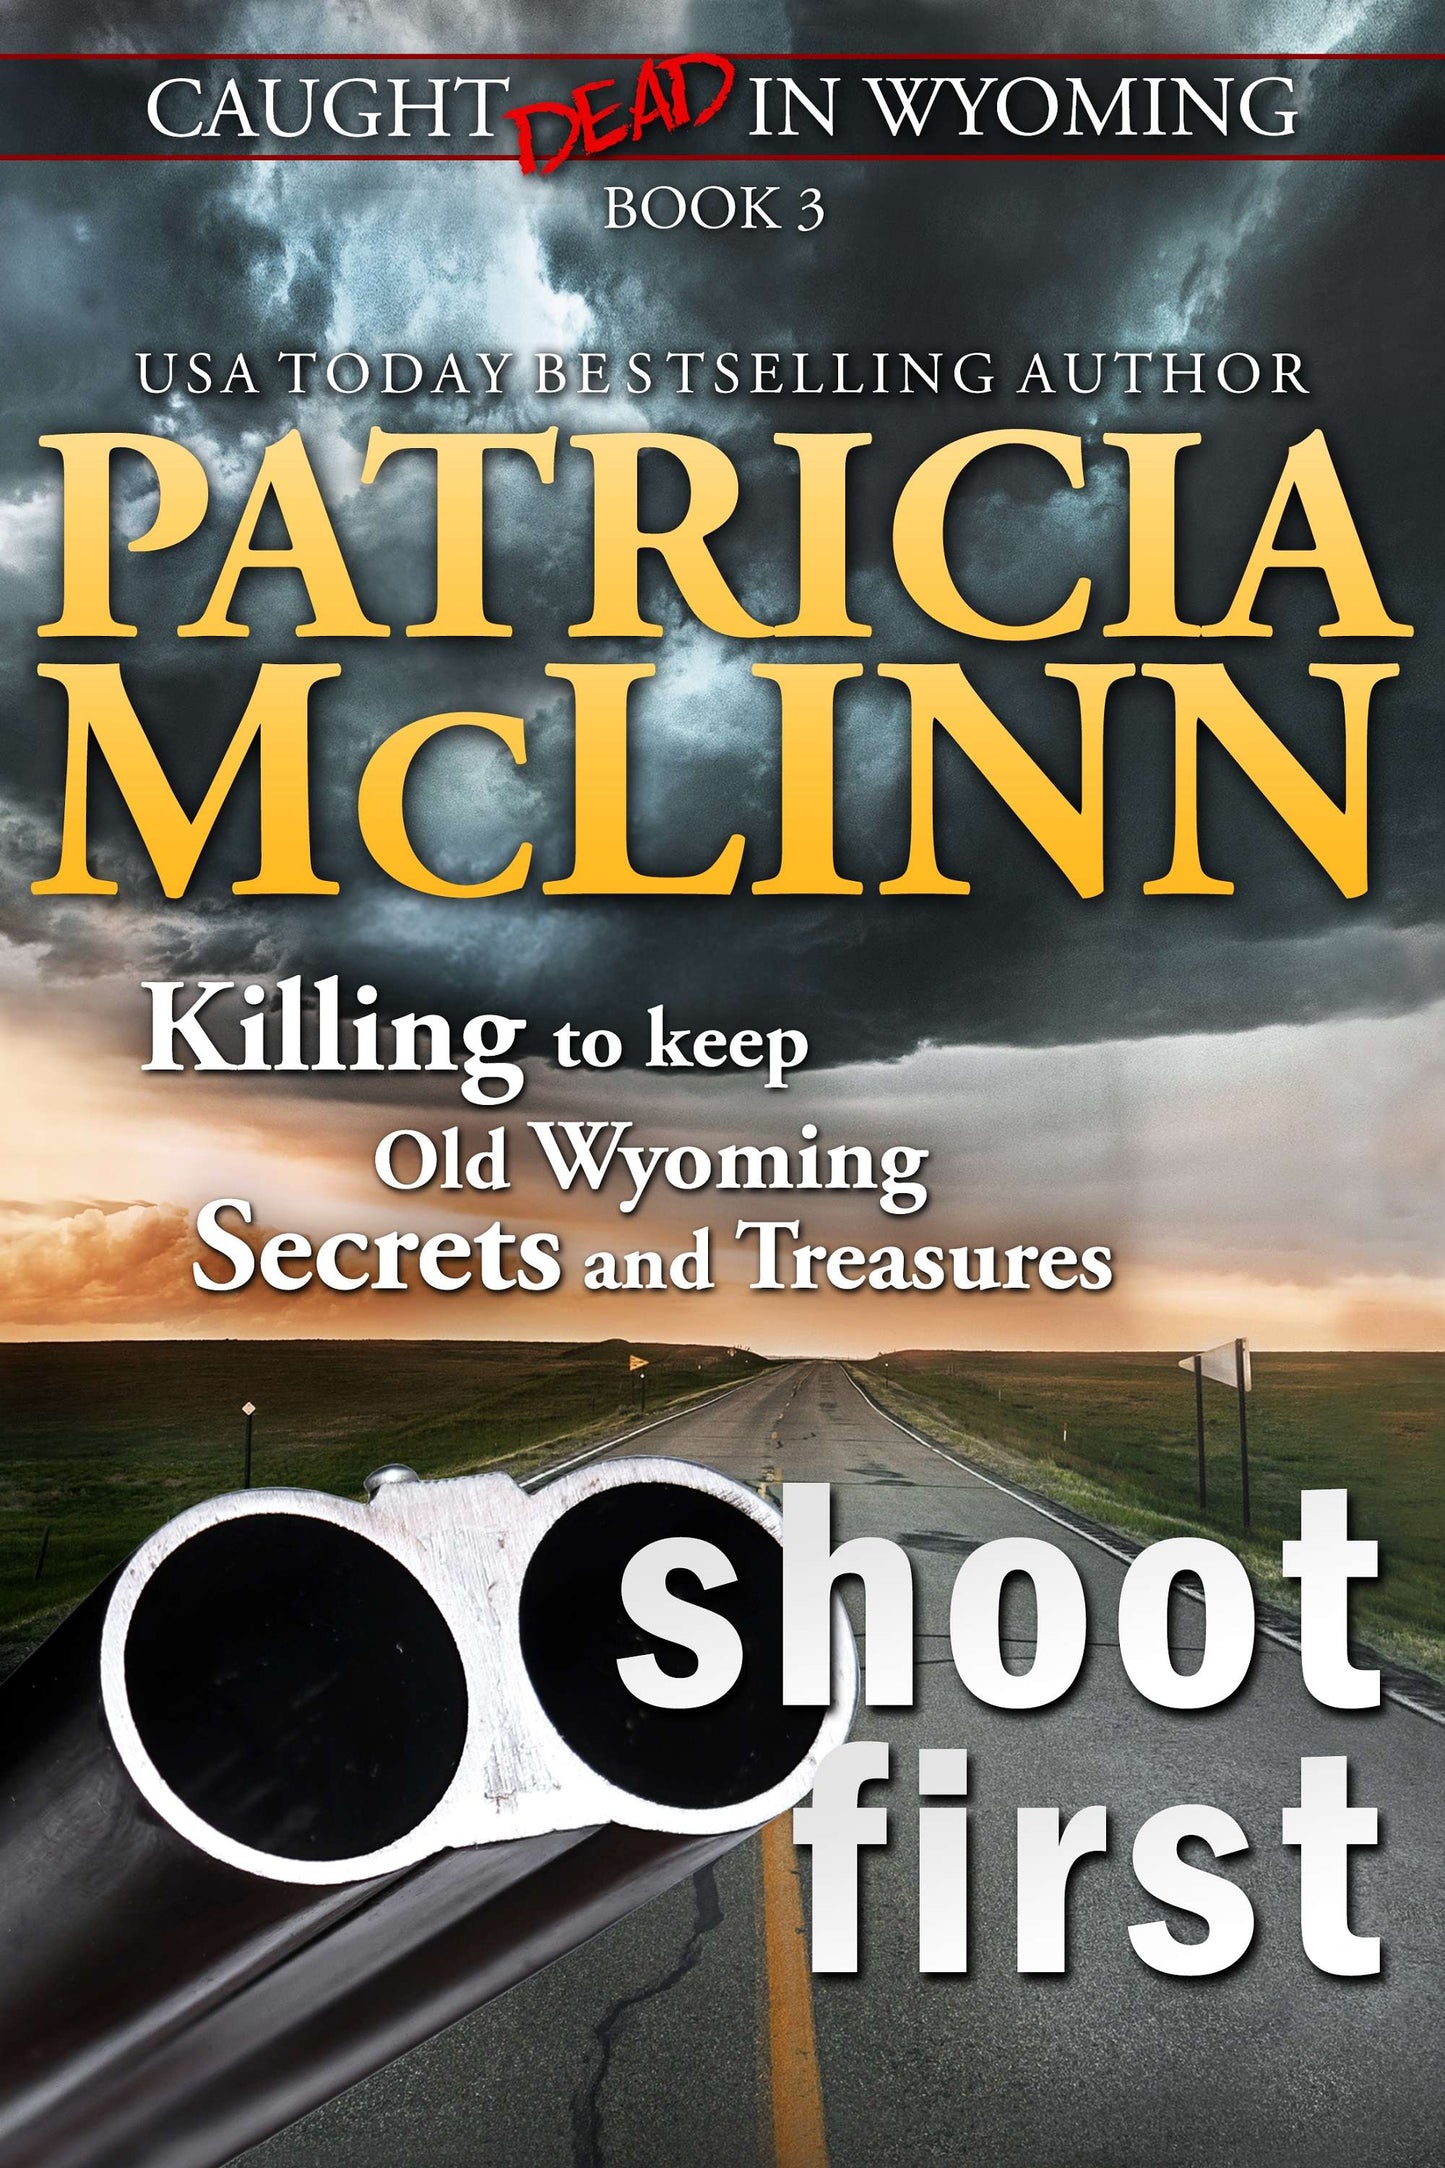 Shoot First - Patricia McLinn